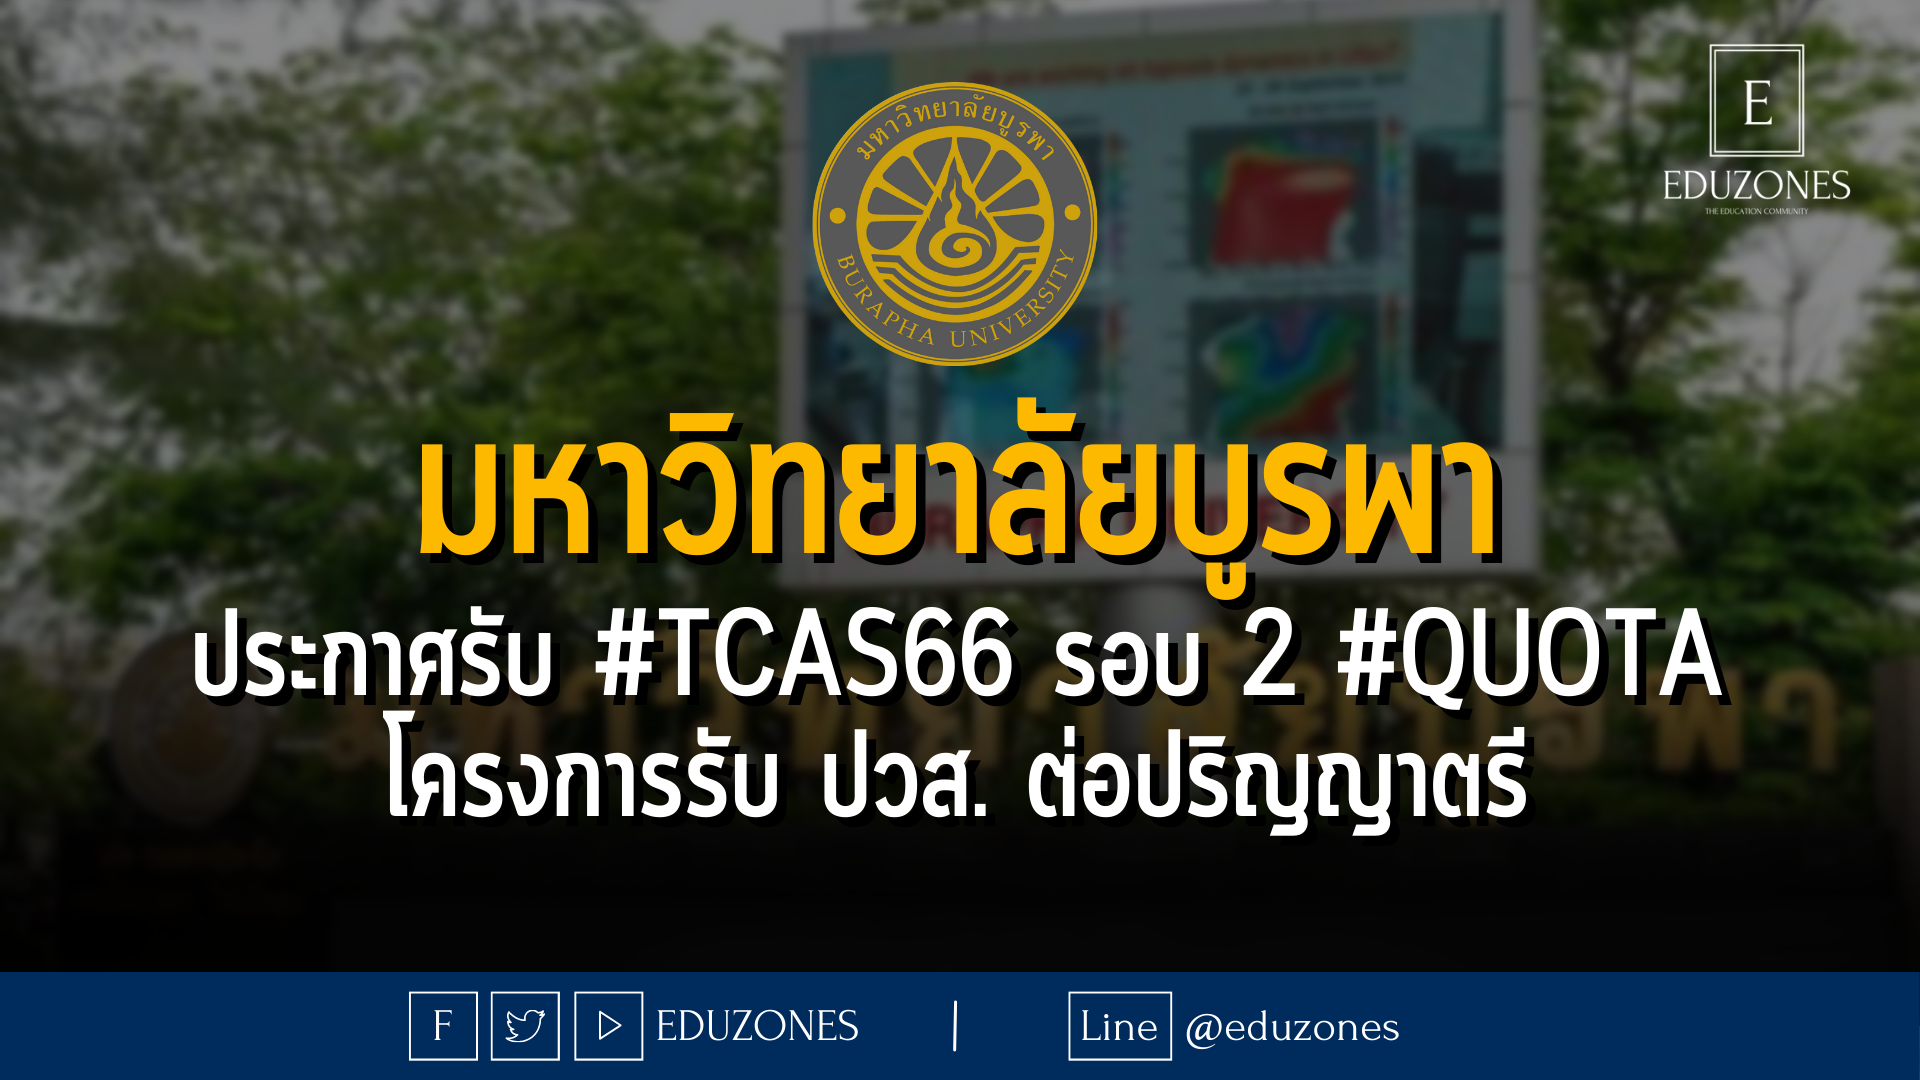 มหาวิทยาลัยบูรพา ประกาศรับ #TCAS66 รอบ 2 #QUOTA โครงการรับ ปวส. ต่อปริญญาตรี - หมดเขต 16 เมษายน 2566